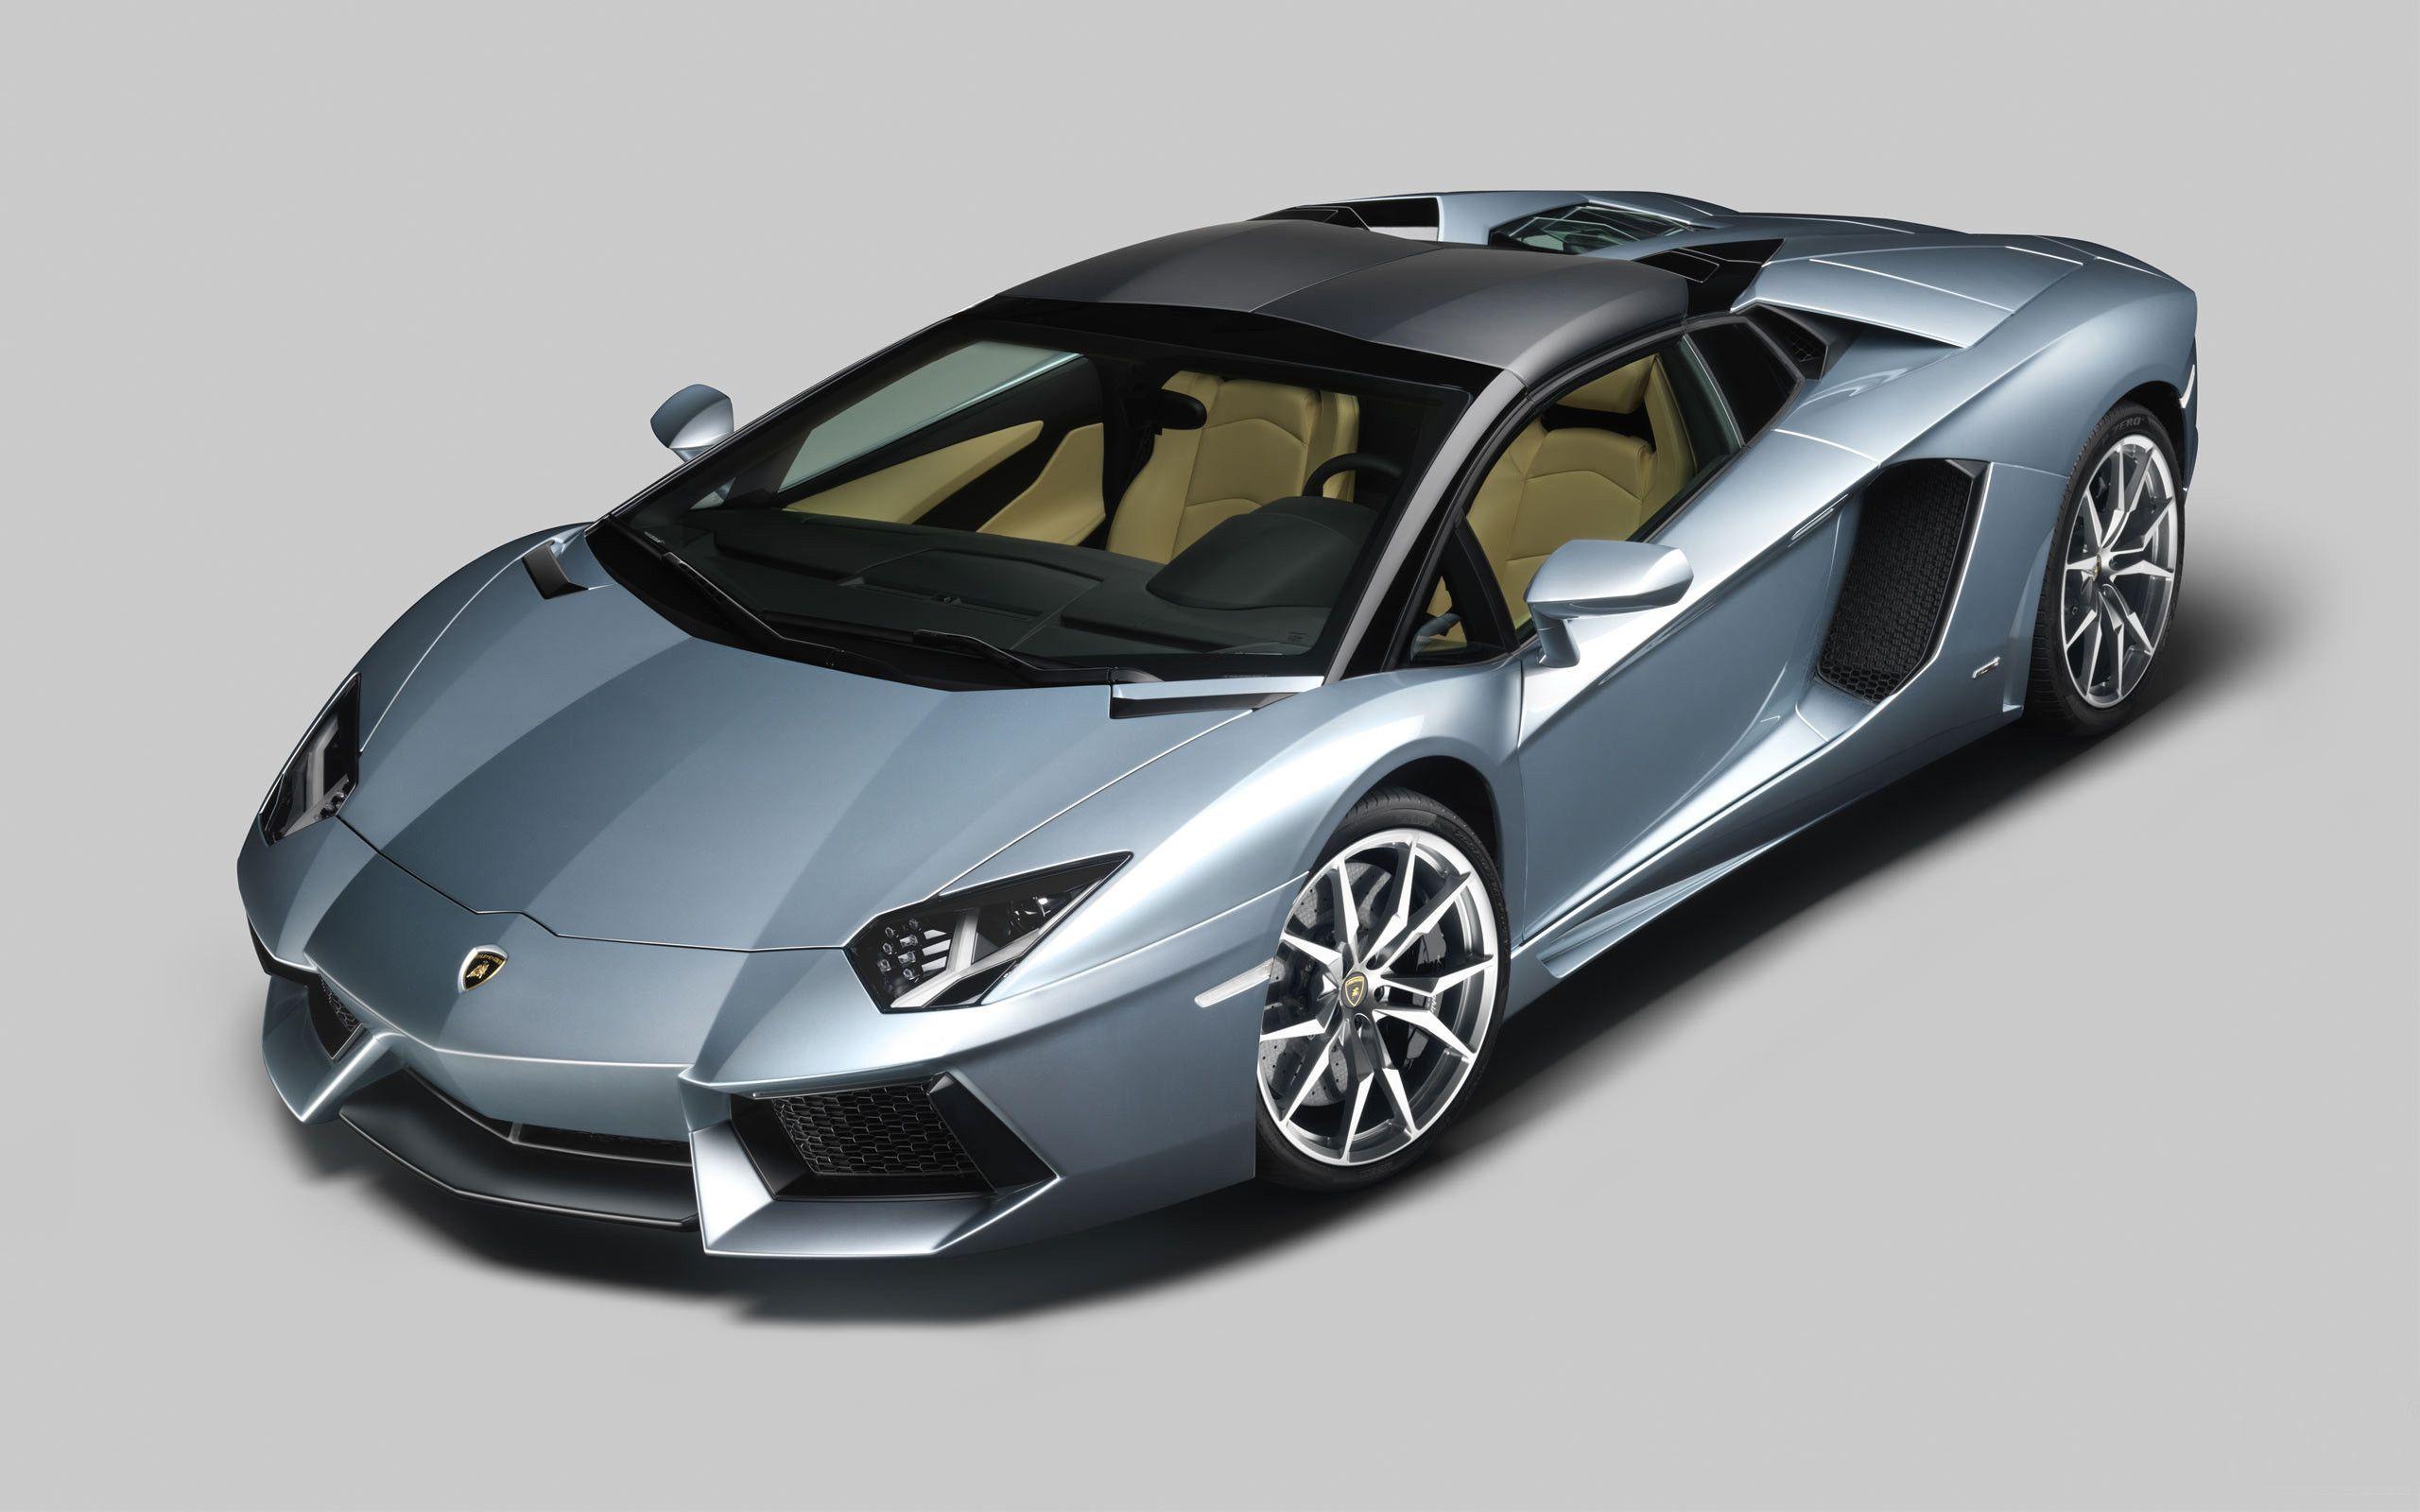 Wallpaper Full HD 1080p Lamborghini New 2015